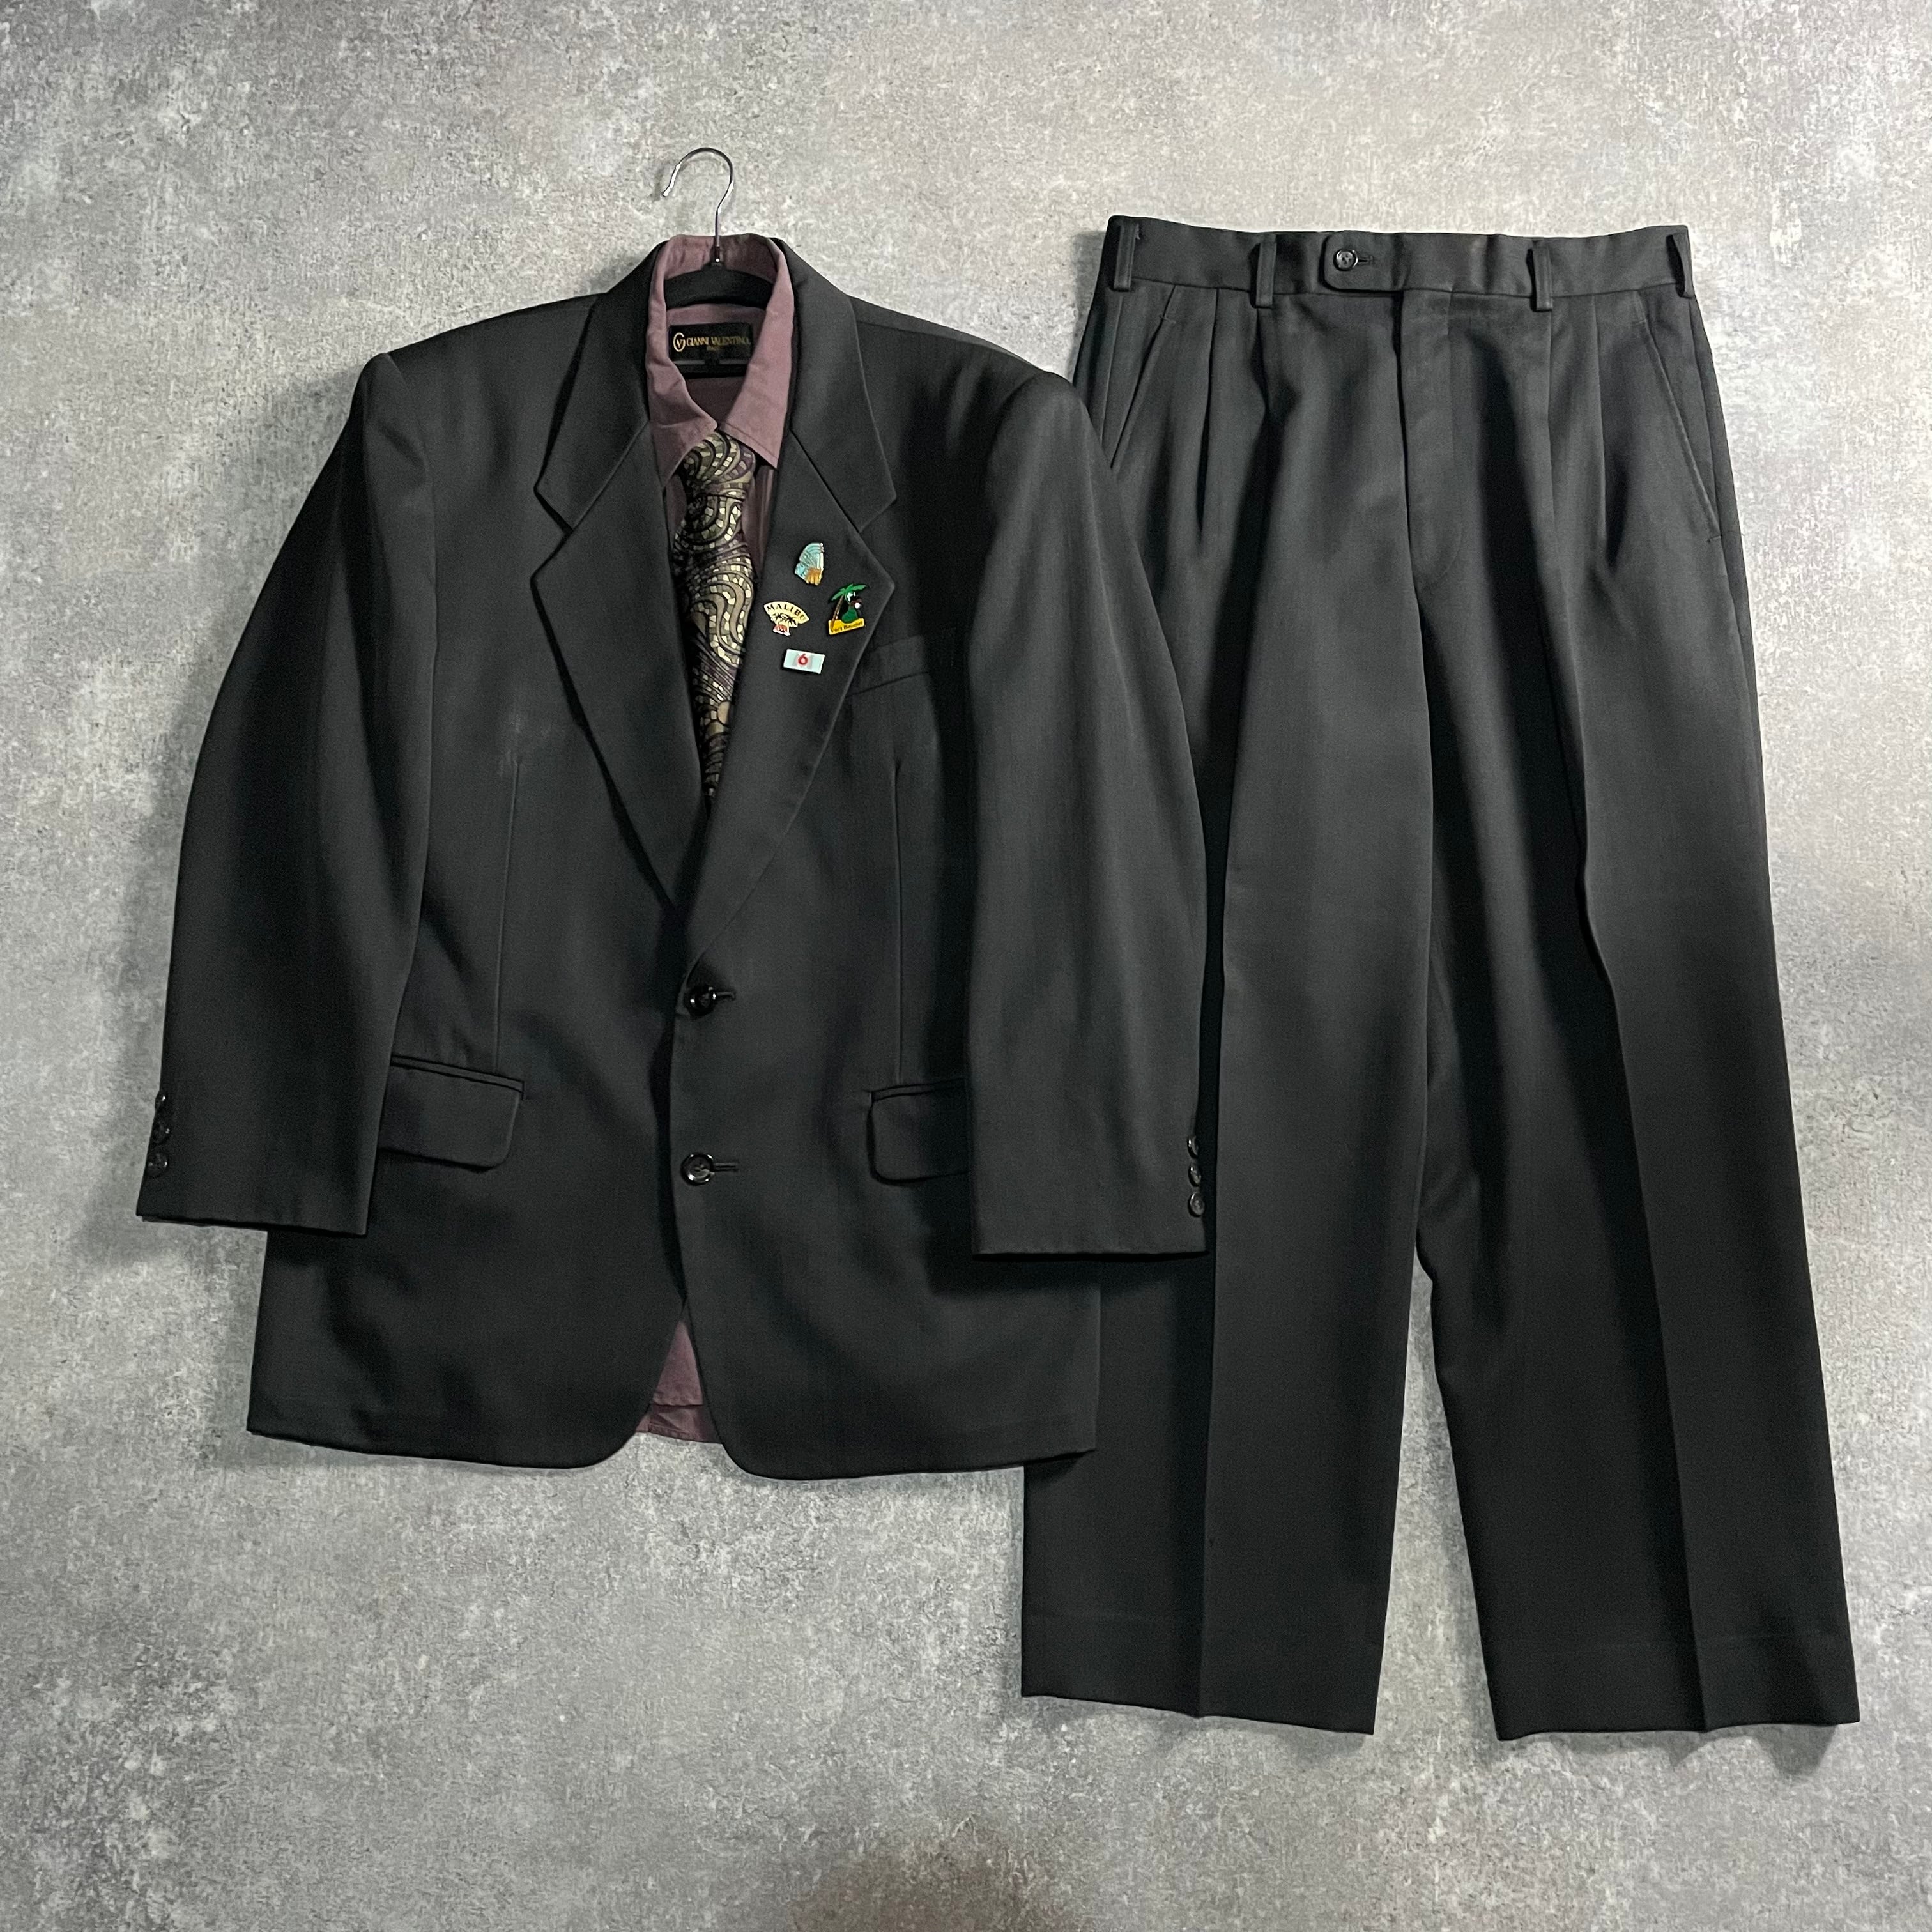 LOST特注【vintage】セットアップ ダブルスーツ ブラック 成人式 | LOST